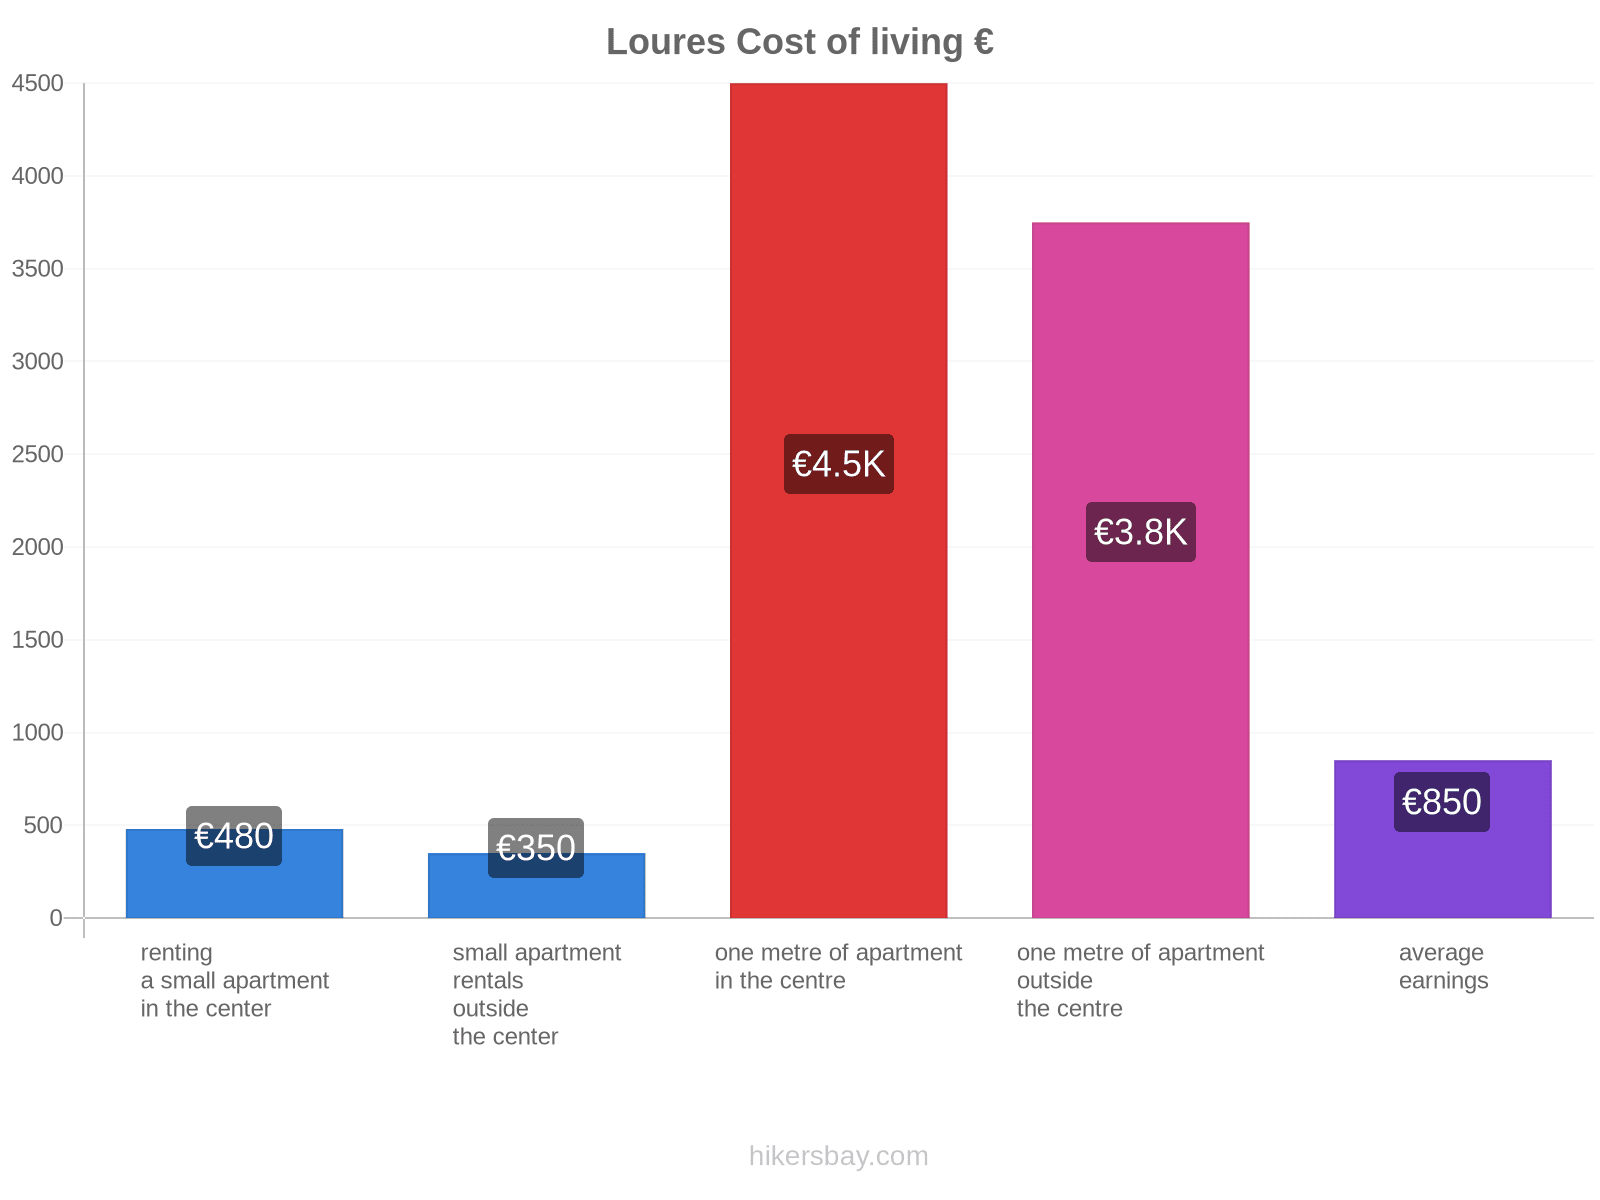 Loures cost of living hikersbay.com